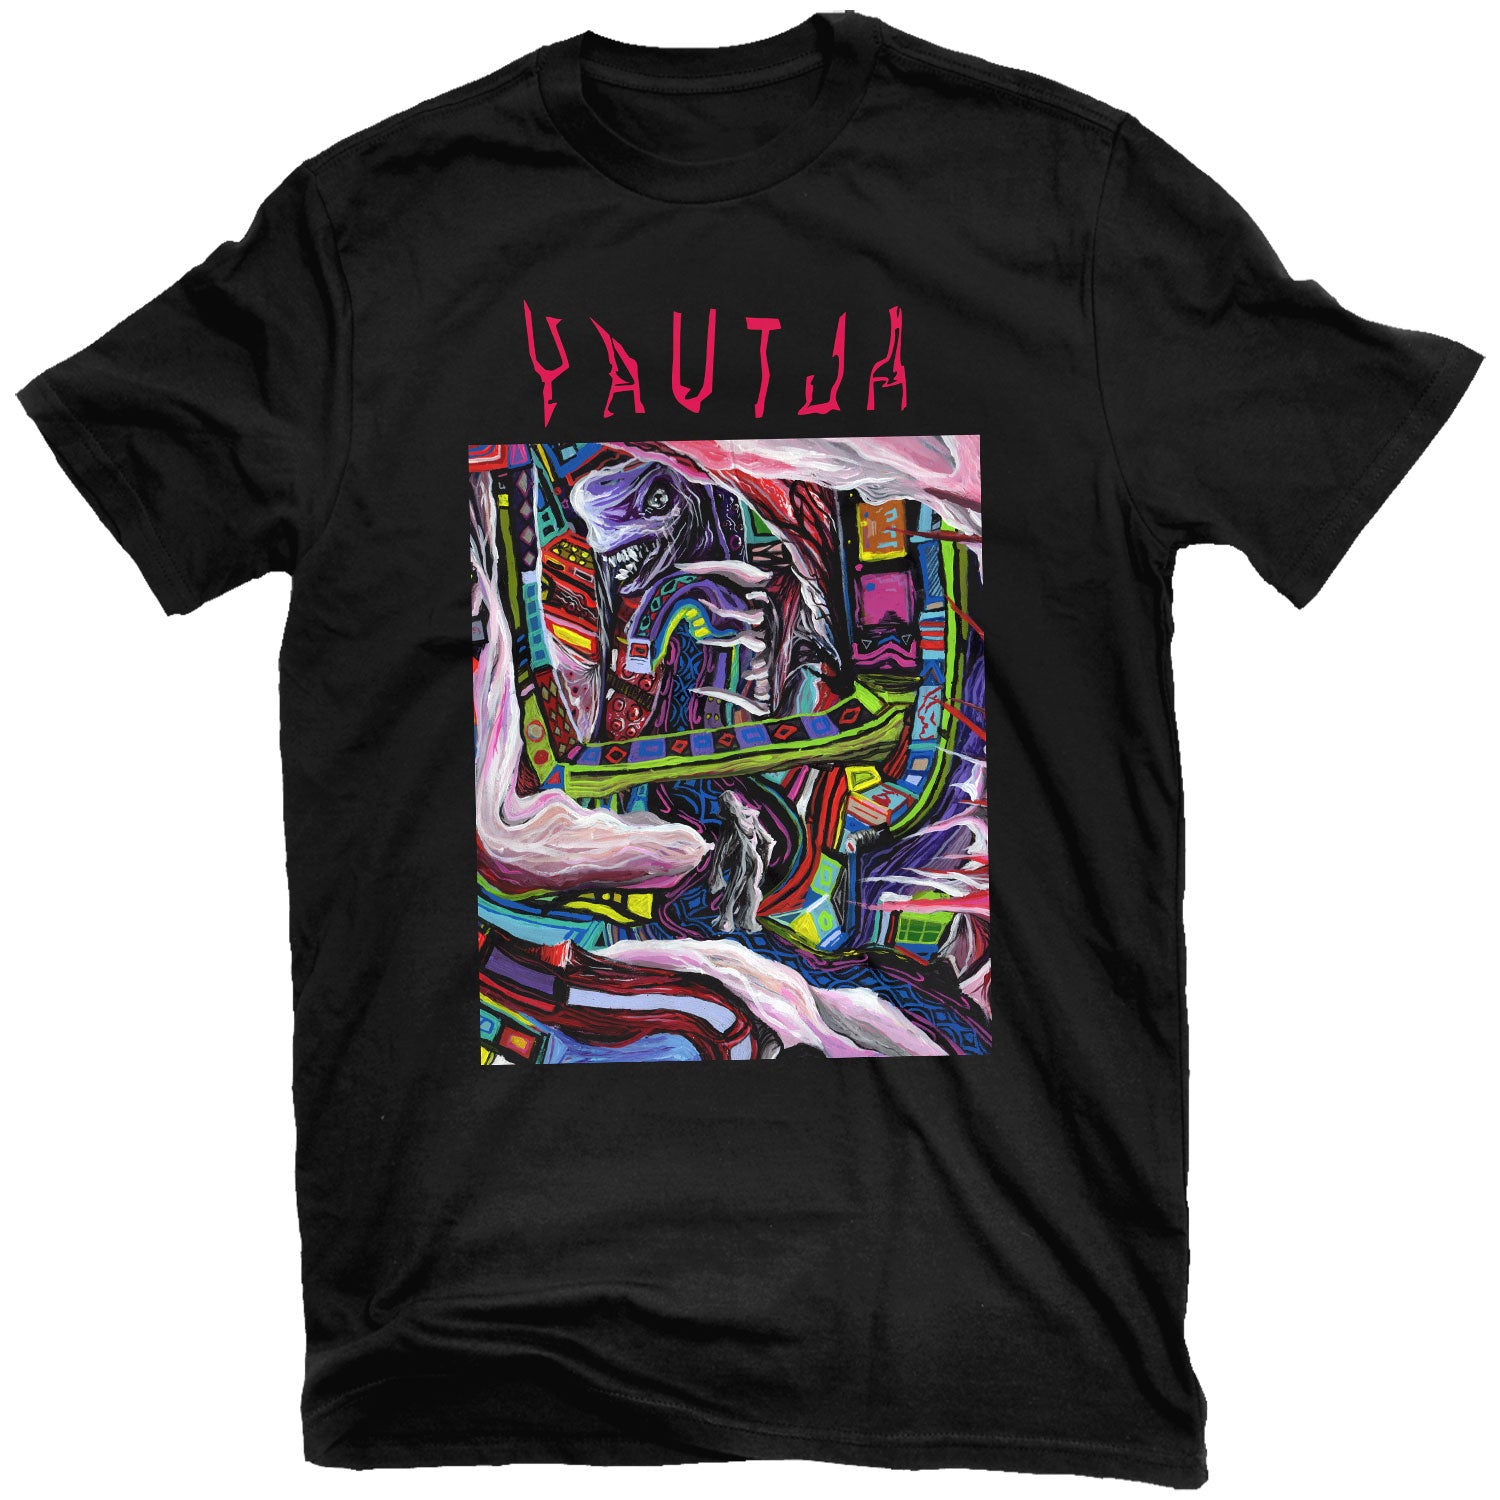 Yautja "The Lurch" T-Shirt